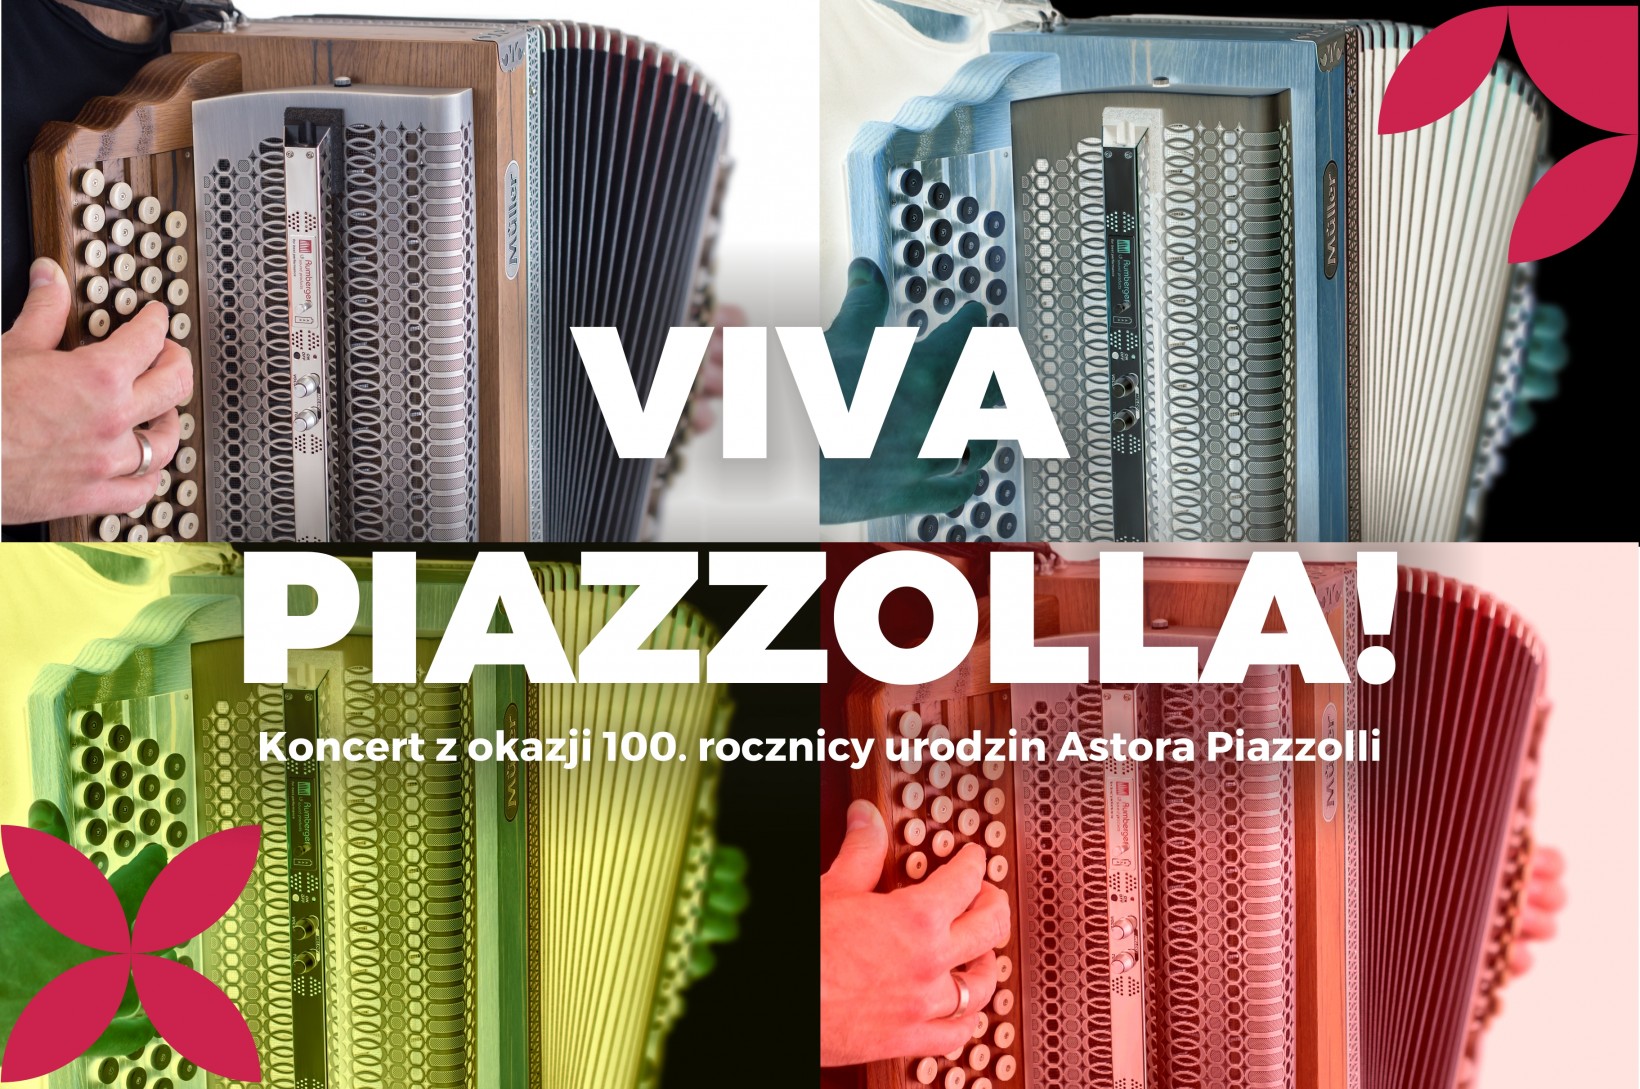 akordeon w abstrakcyjnych kolorach z napisem Viva Piazzolla